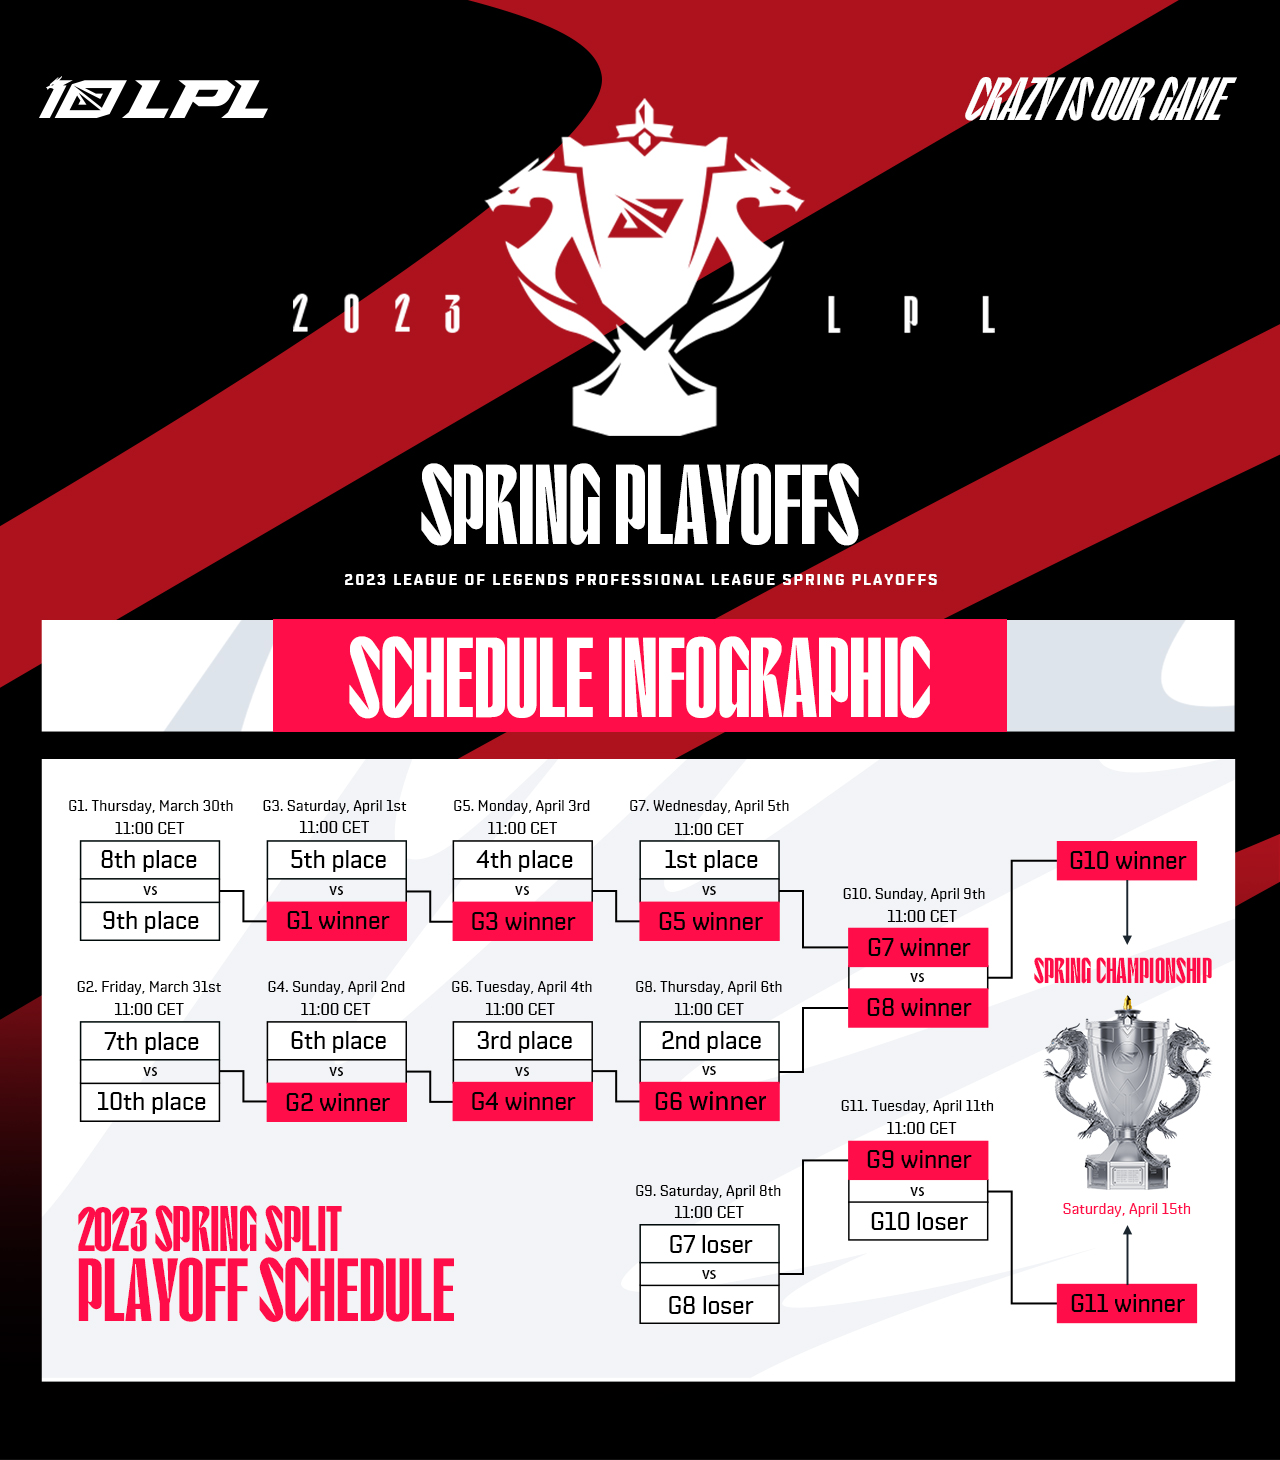 LPL on Twitter "The 2023 LPL Spring Playoffs schedule is here! Tune